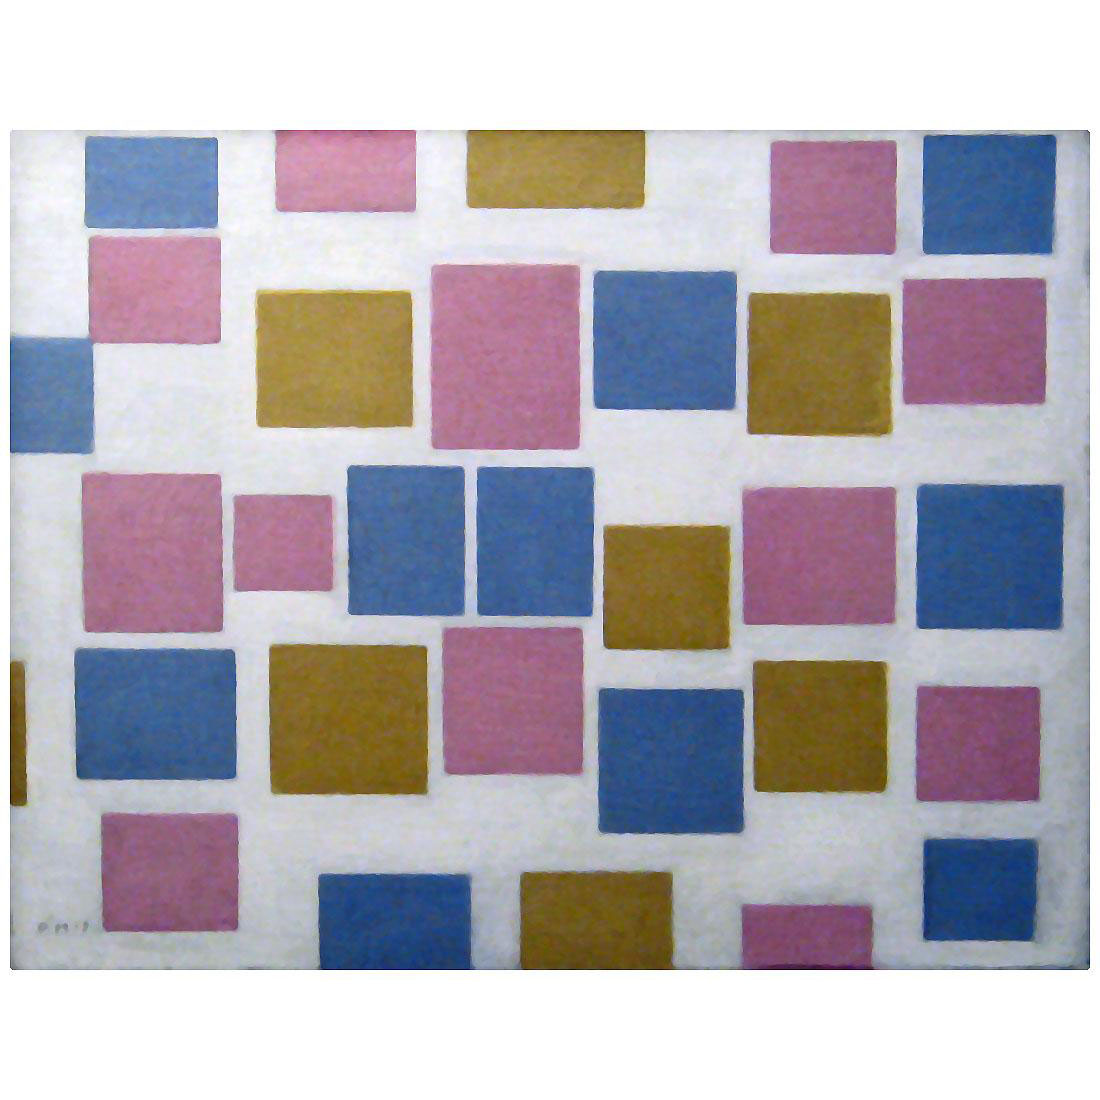 Piet Mondriaan. Composition No.3. 1917. Gemeentemuseum Den Haag